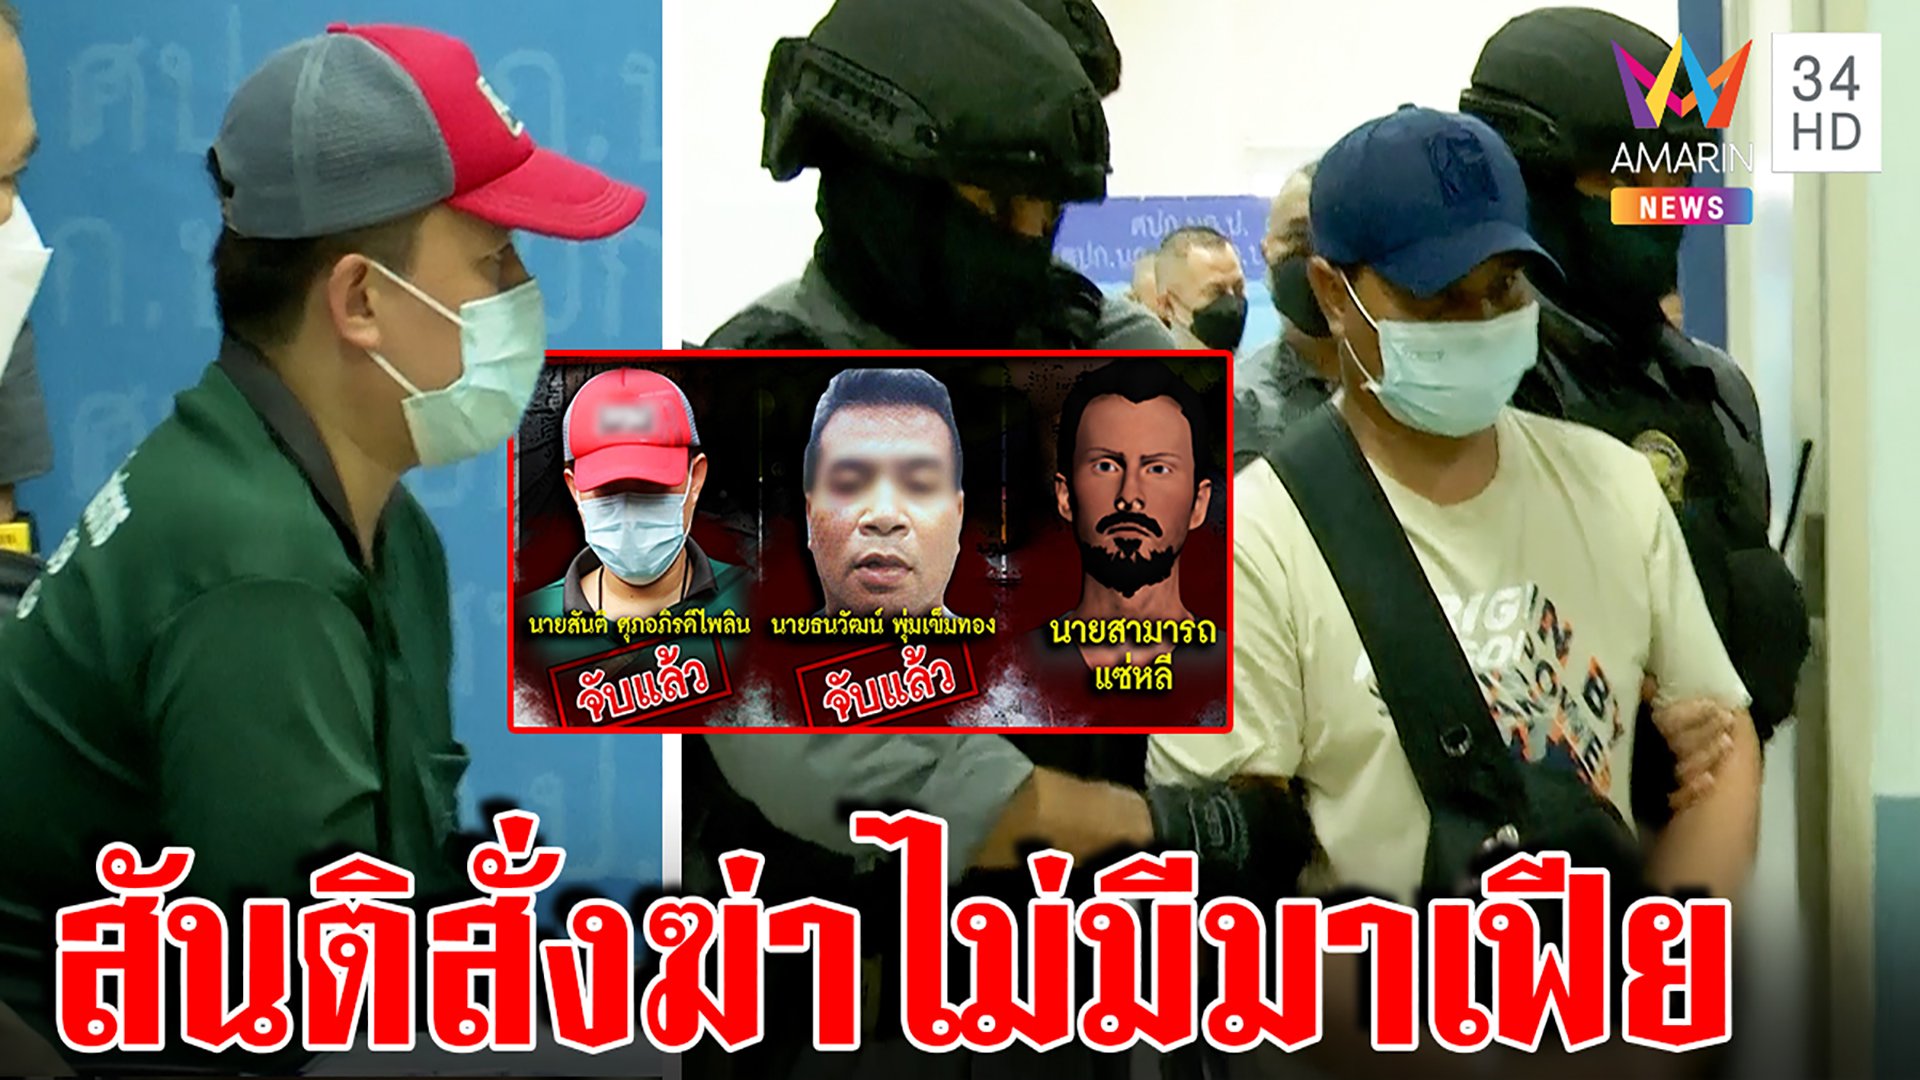 สะพรึงแก๊งร่วมฆ่าผัวเมียหนีกลับไทยโดนจับคาบ้านสาว แฉสิ้นสันติจ้างฆ่า 1 ล้าน | ทุบโต๊ะข่าว | 19 มิ.ย. 65 | AMARIN TVHD34